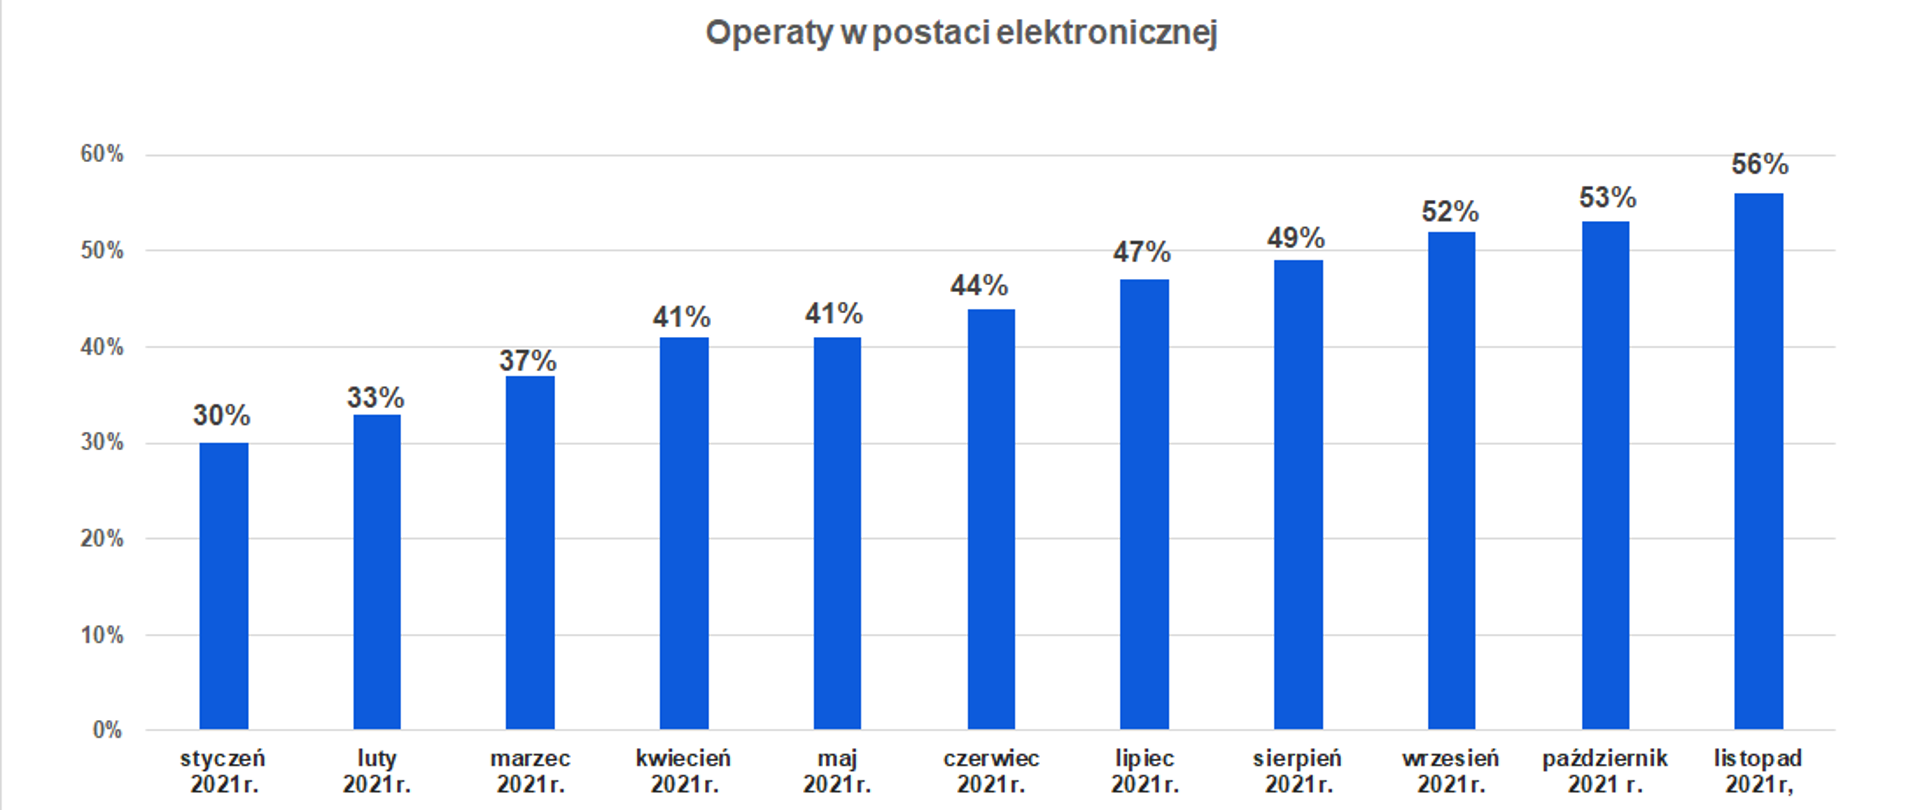 Wykres przedstawiający jaki procent operatów elektronicznych był przekazywany do PZGiK w poszczególnych miesiącach 2021 roku: styczeń-30%, luty-33%, marzec 37%, kwiecień-41%, maj-41%, czerwiec-44%, lipiec-47%, sierpień-49%, wrzesień-52%, październik-53%, listopad-56%.